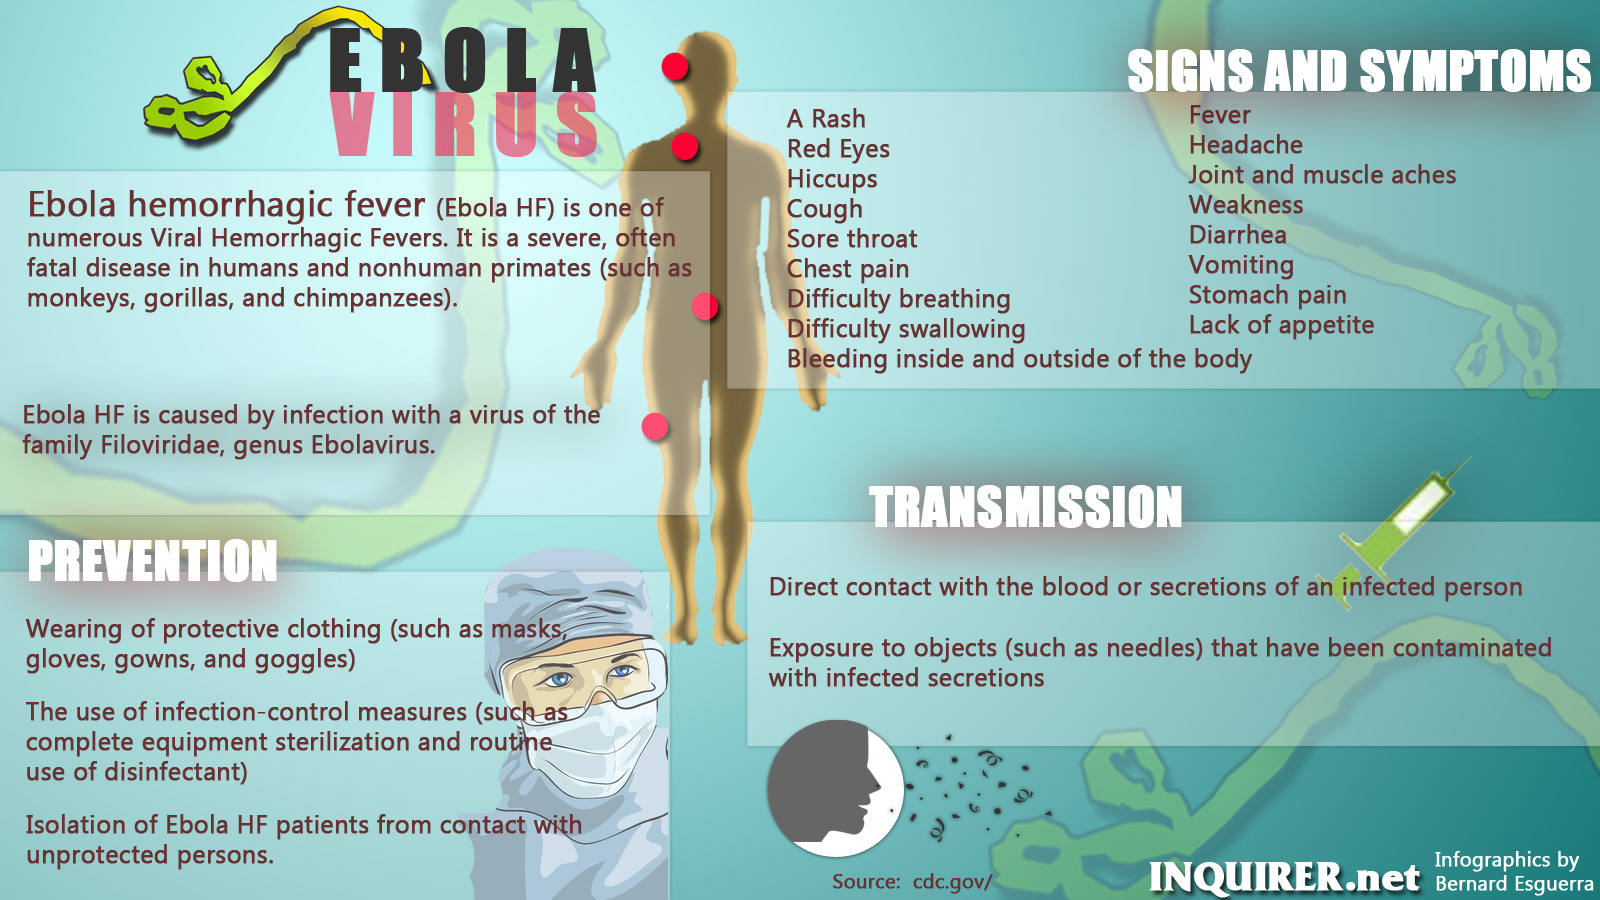 http://newsinfo.inquirer.net/files/2014/08/ebola-virus-0801.jpg